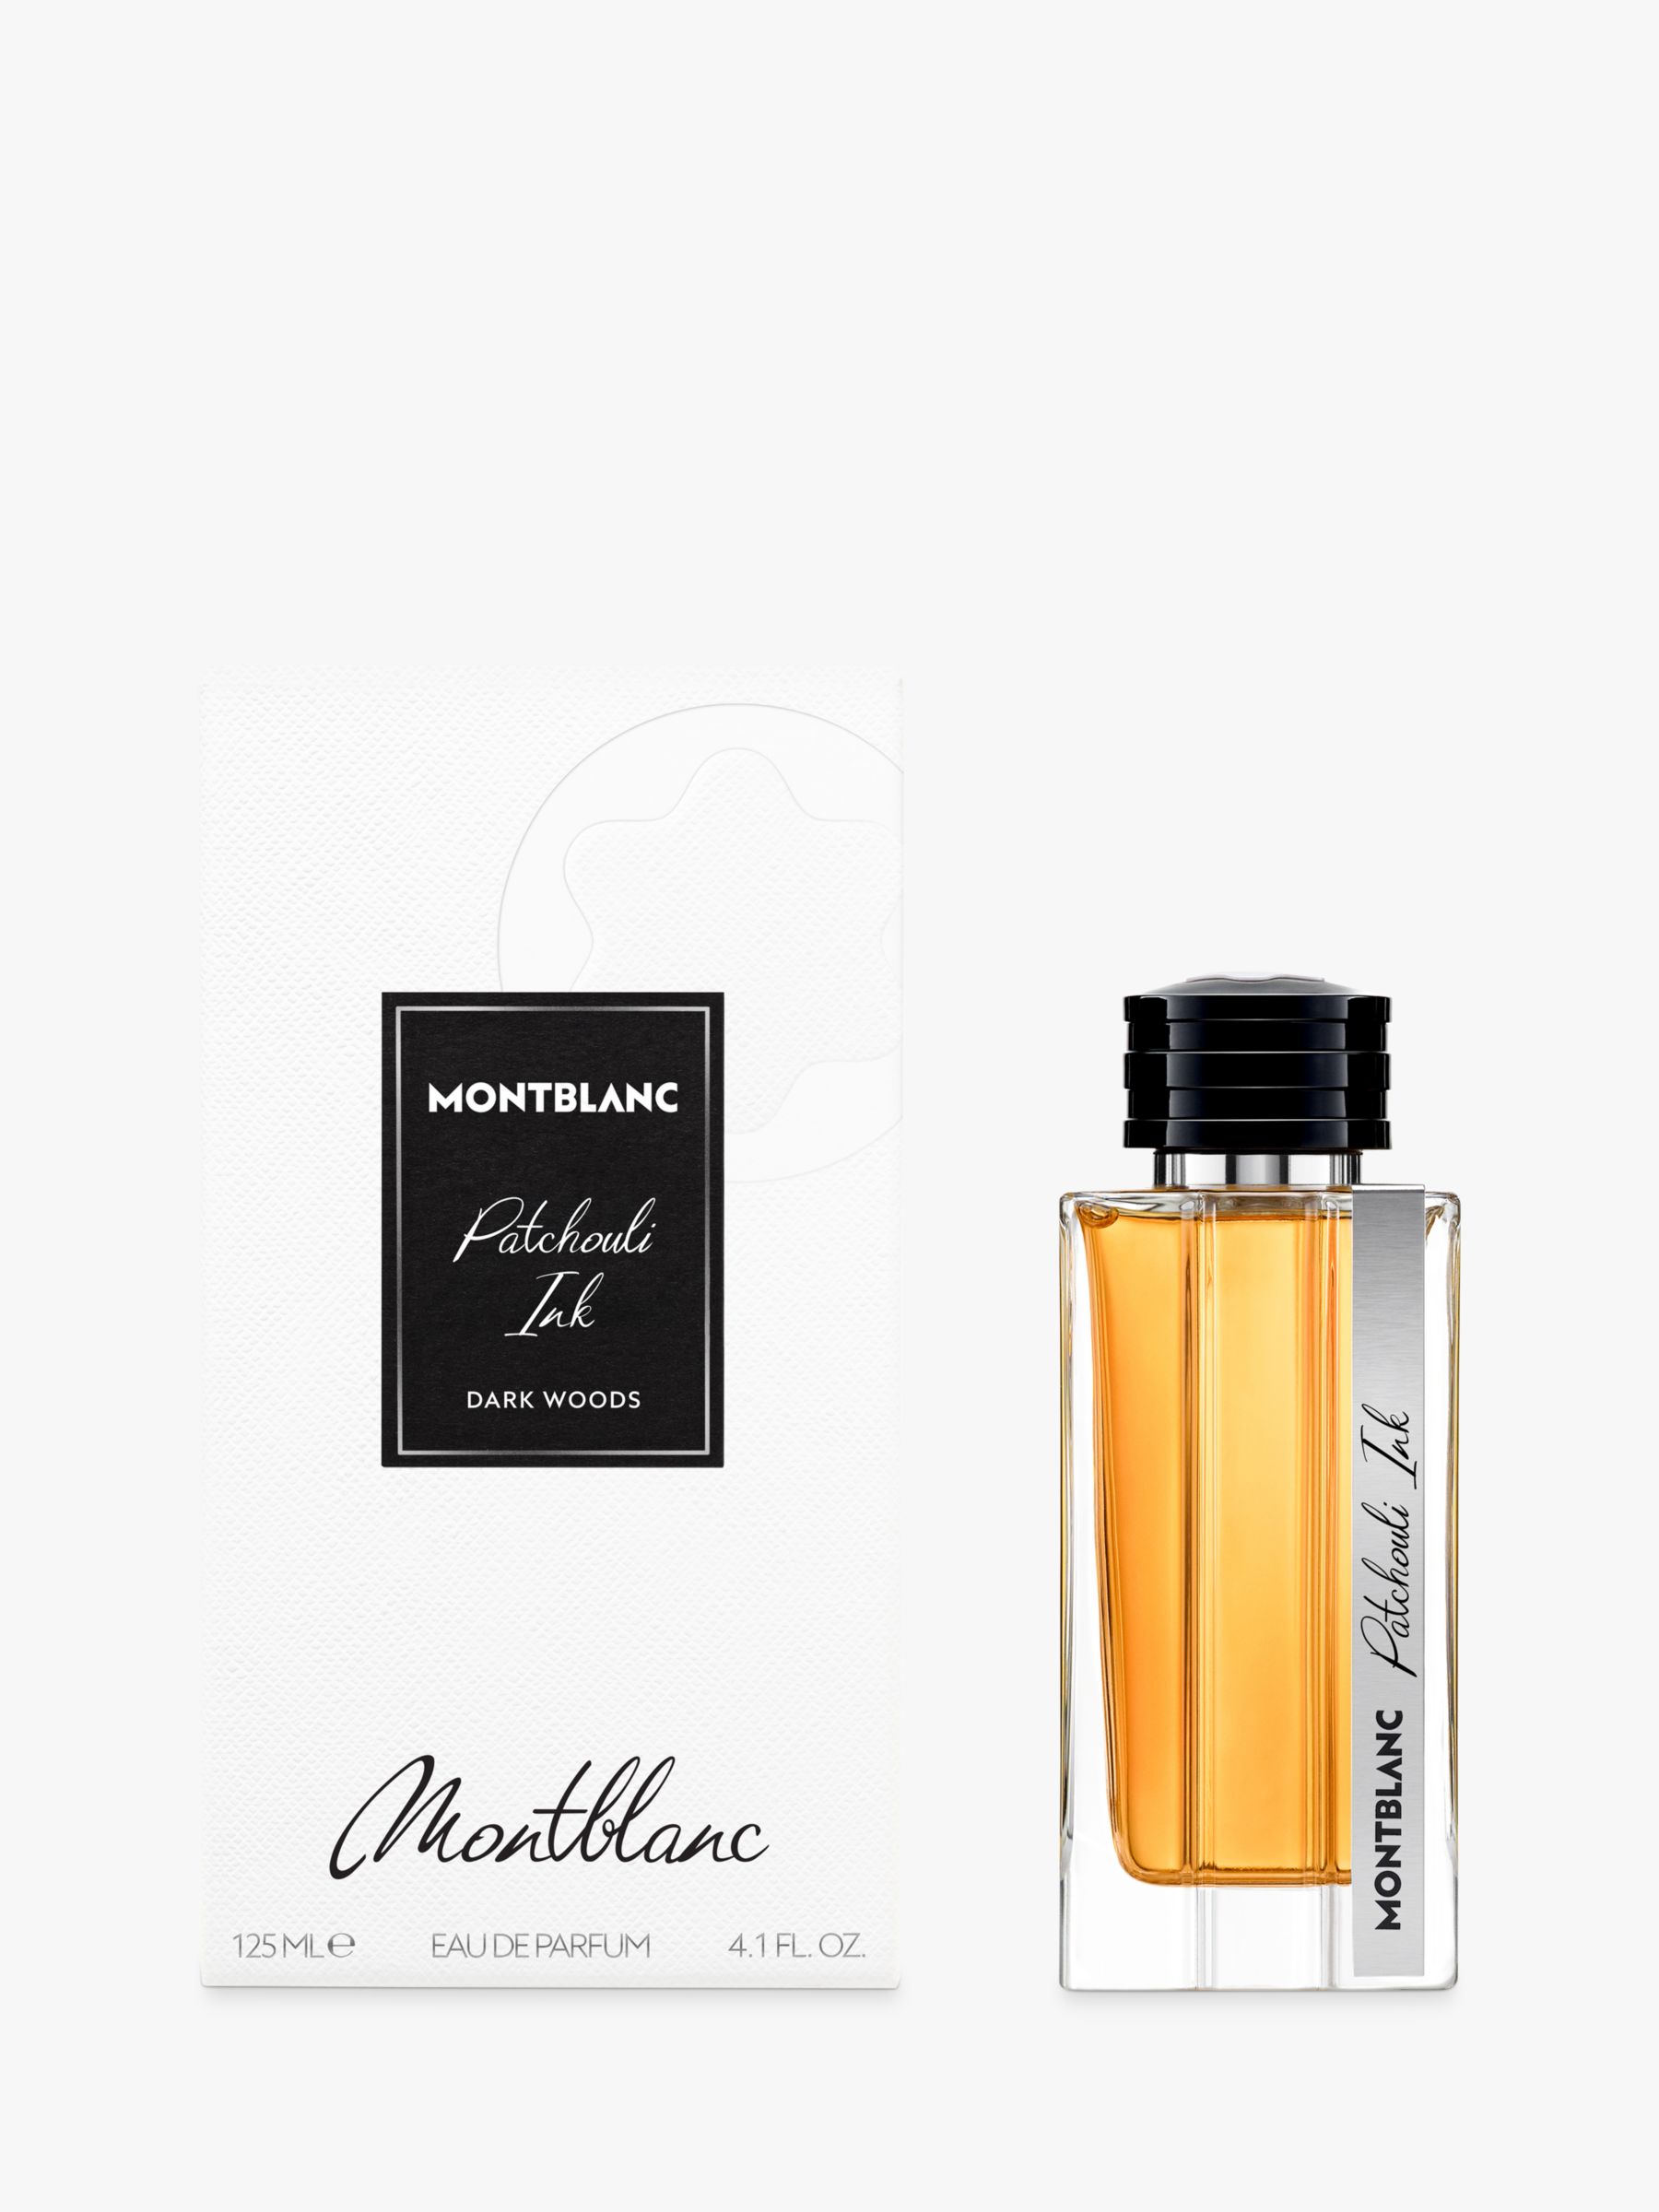 Montblanc Patchouli Ink Eau de Parfum, 125ml 2